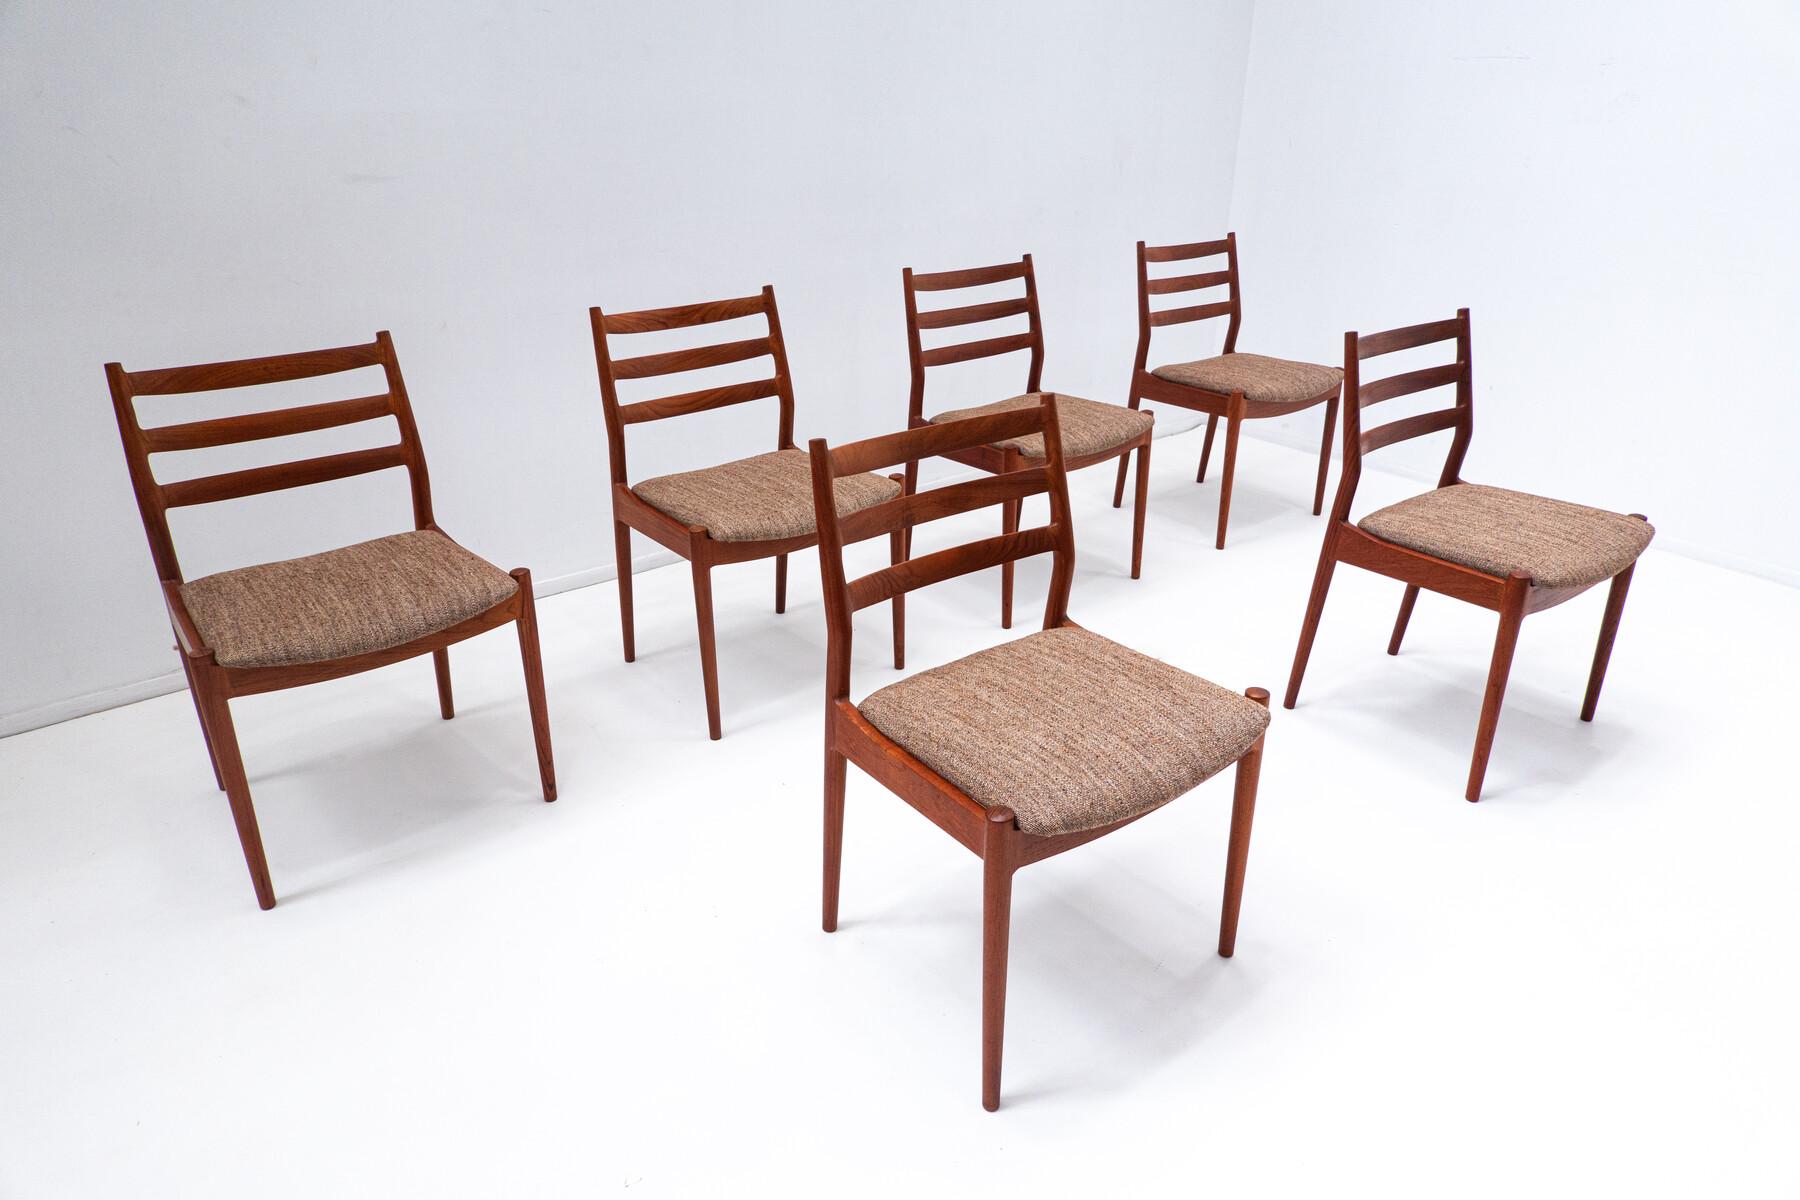 Set of 6 mid-century Scandinavian wooden chairs - 1960s.